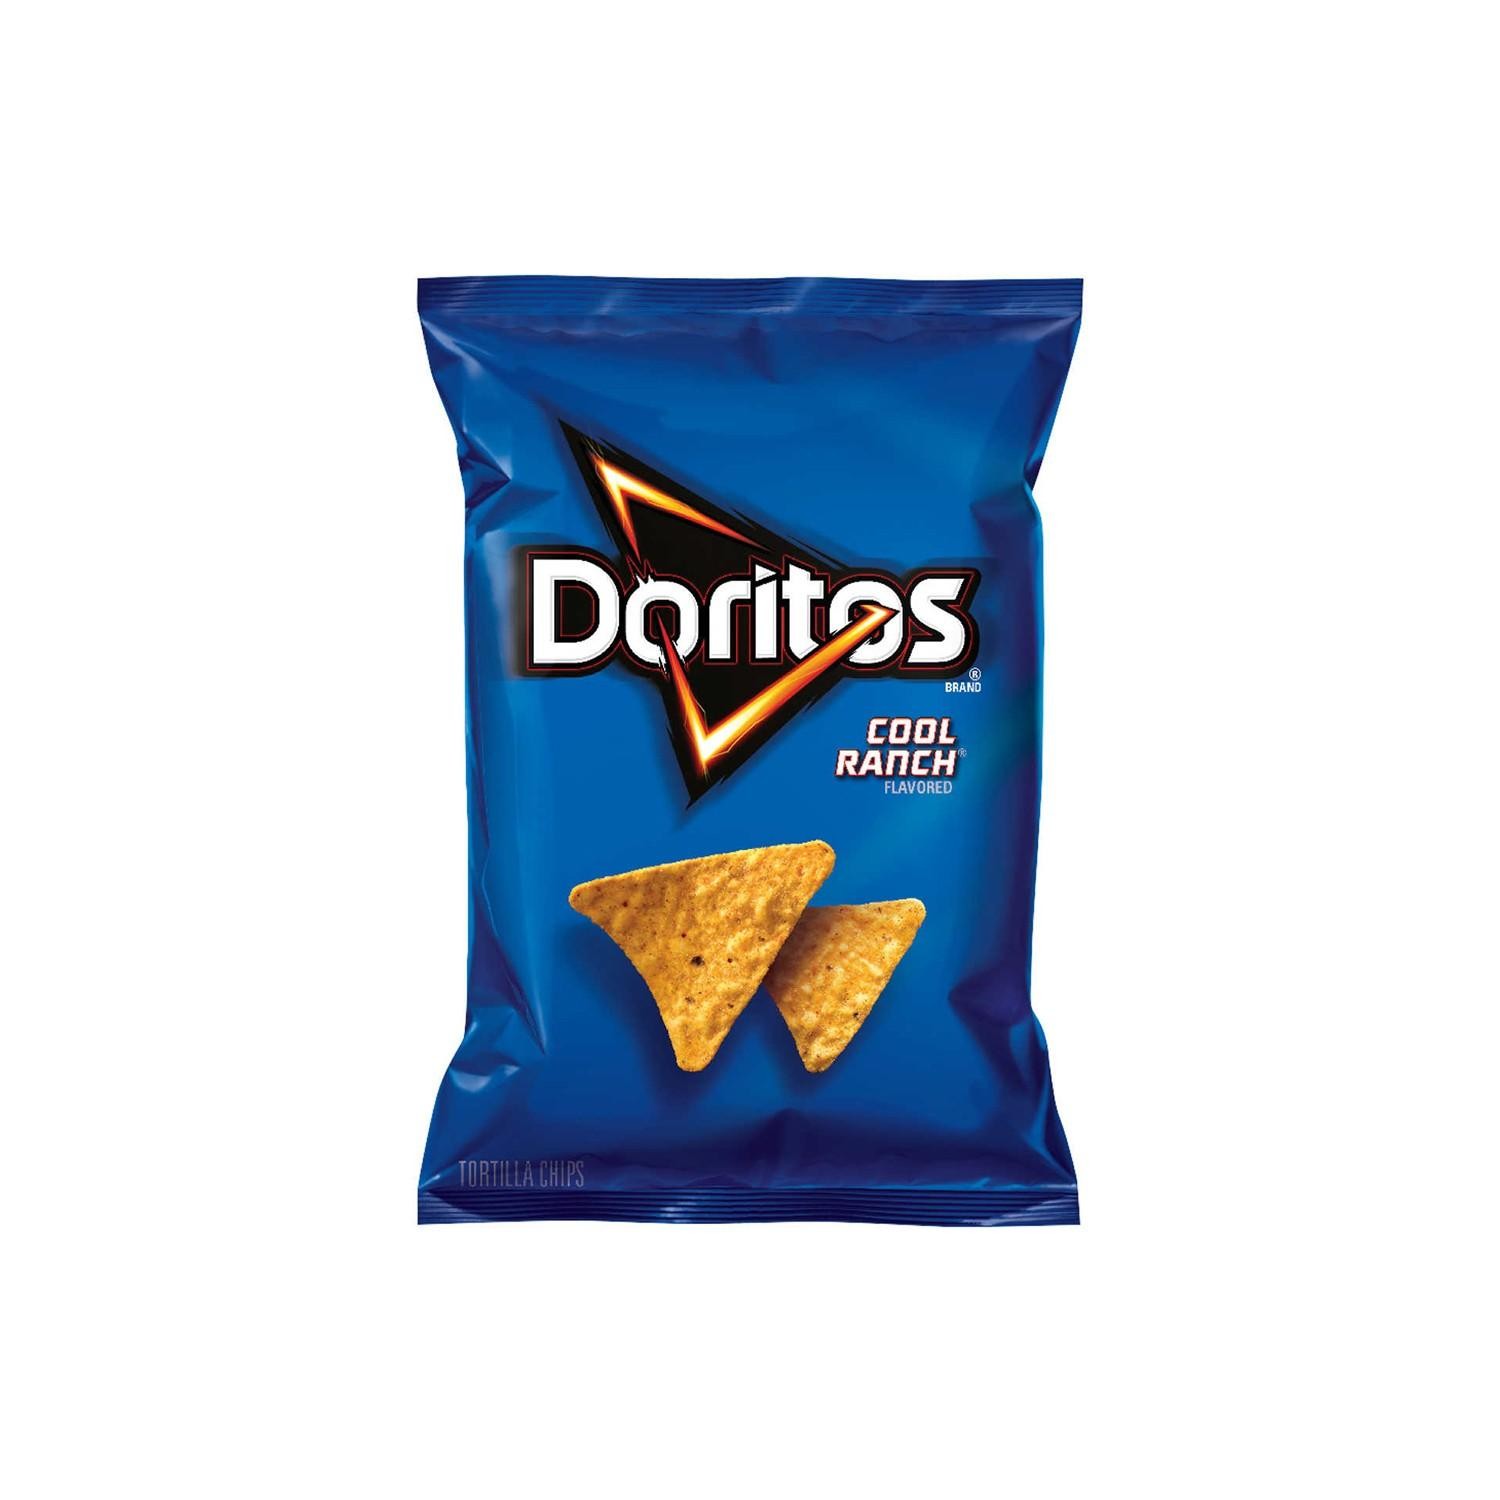 Doritos Cool Ranch (1.75 oz bag)